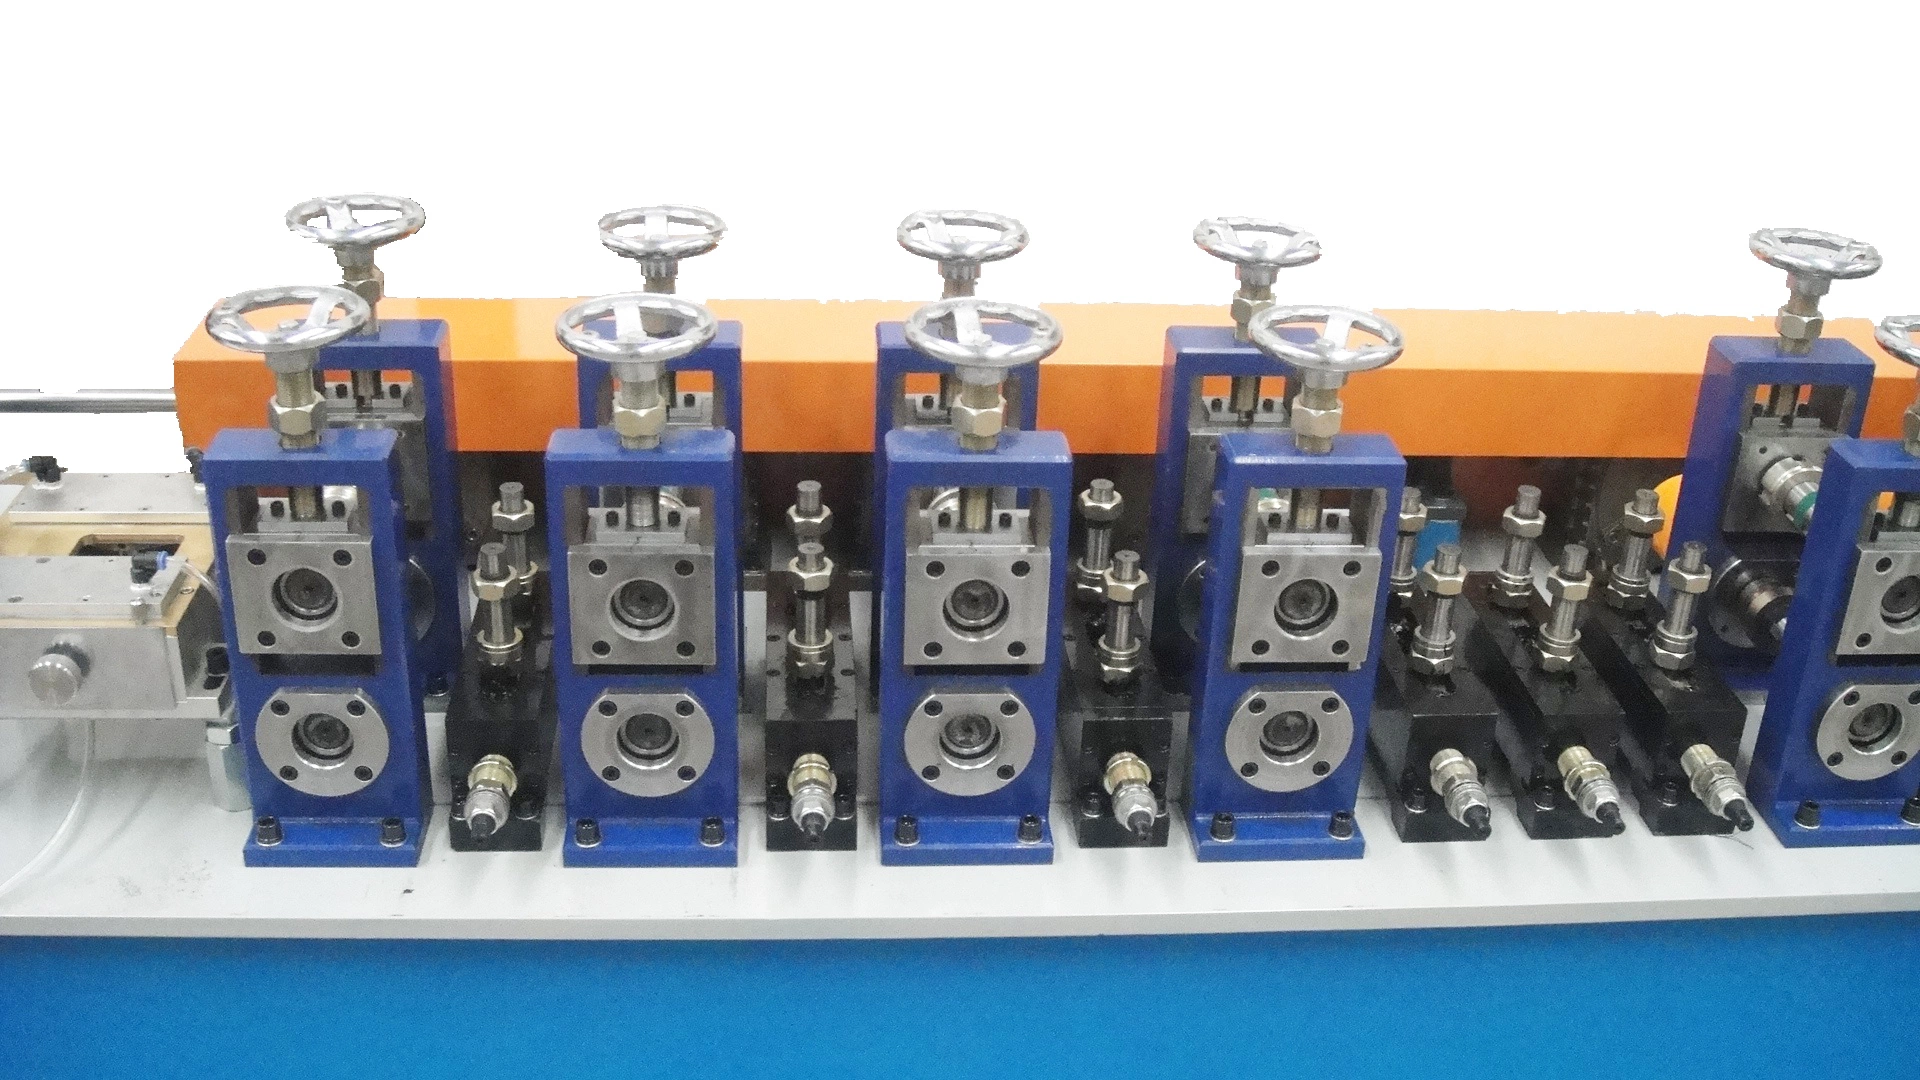 Ligne de production de tuyaux de soudage Machines de moulin à tubes d'échangeur de chaleur Machine de fabrication de tuyaux en bobine en acier inoxydable